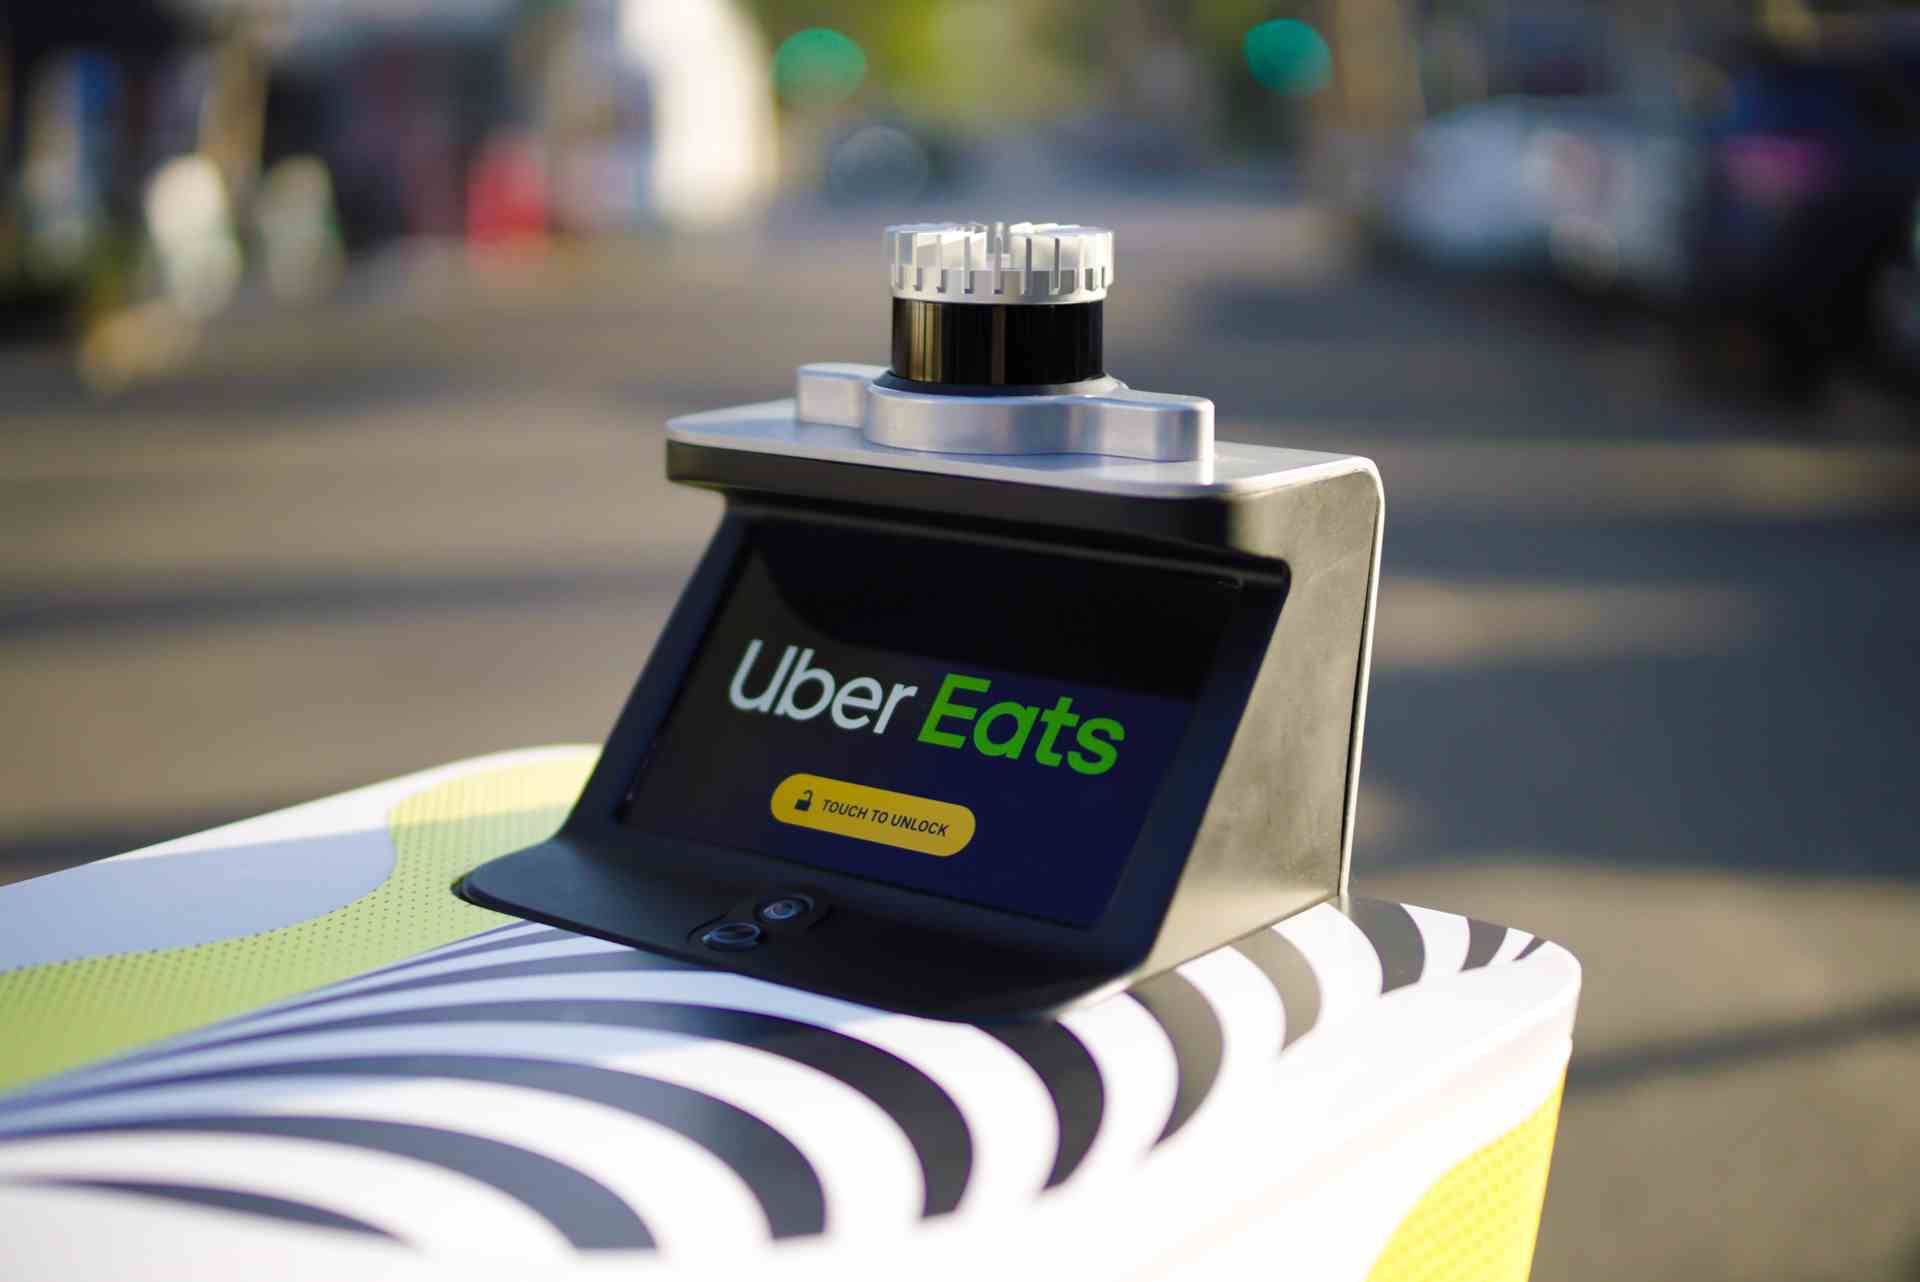 Servierroboter mit uber eats Branding